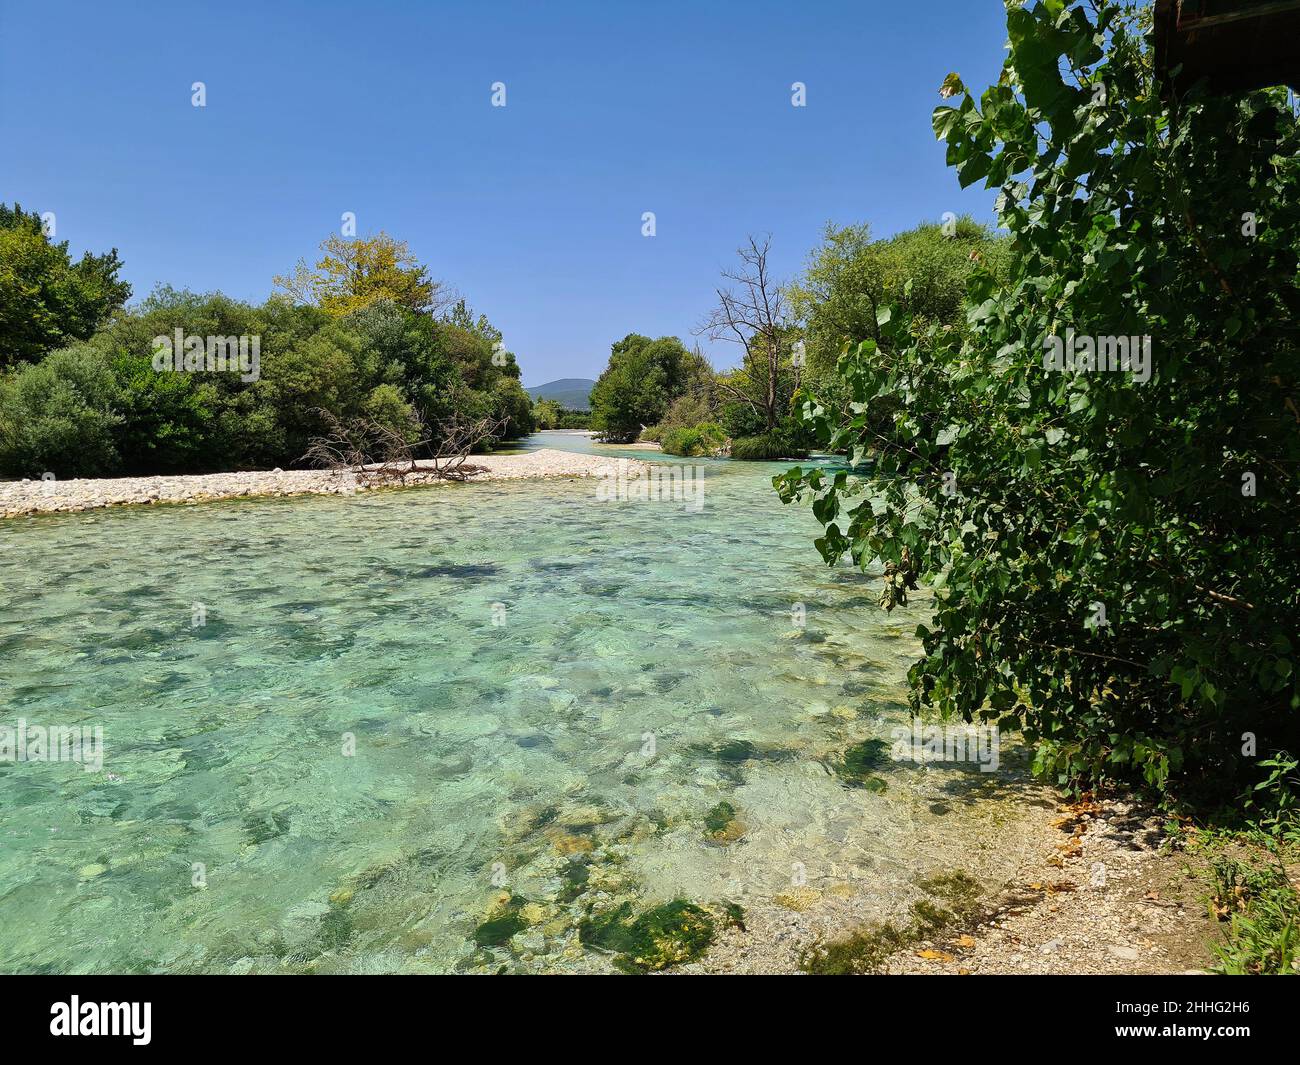 Grèce, Glyki, l'eau claire mais froide de la rivière Acheron, dans la mythologie grecque Acheron était l'une des rivières du sous-monde grec. Banque D'Images